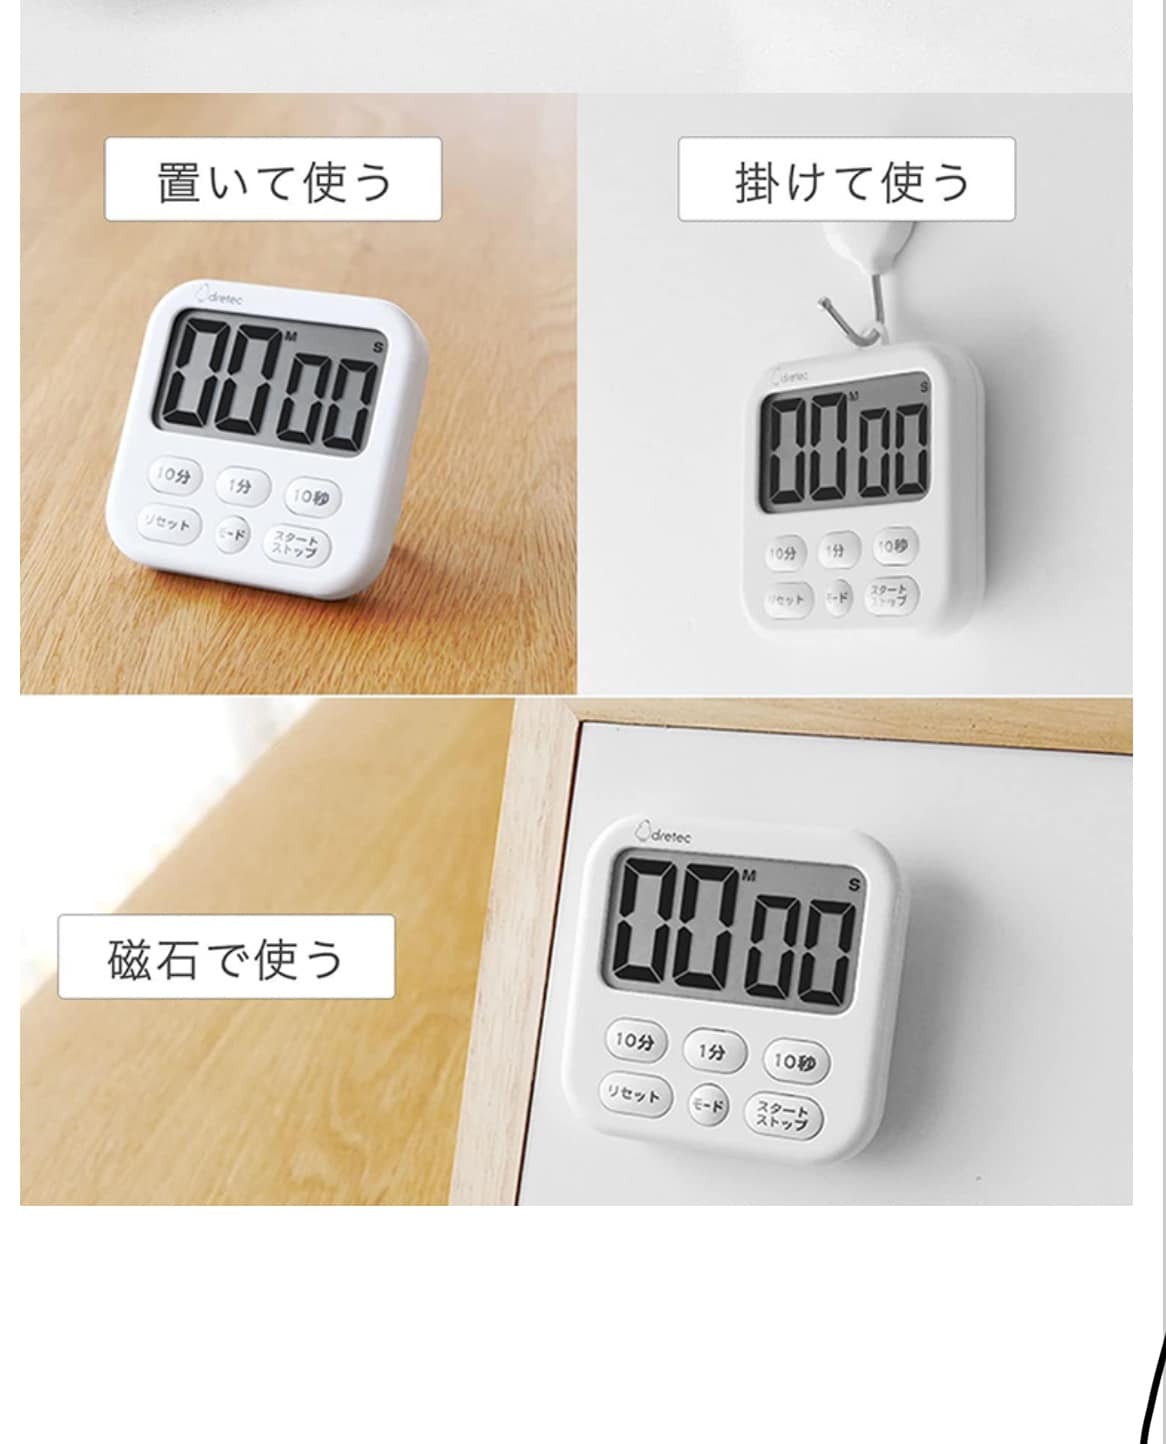 日本餐具 DRETEC大螢幕時鐘烹飪料理計時器 王球餐具 (4)